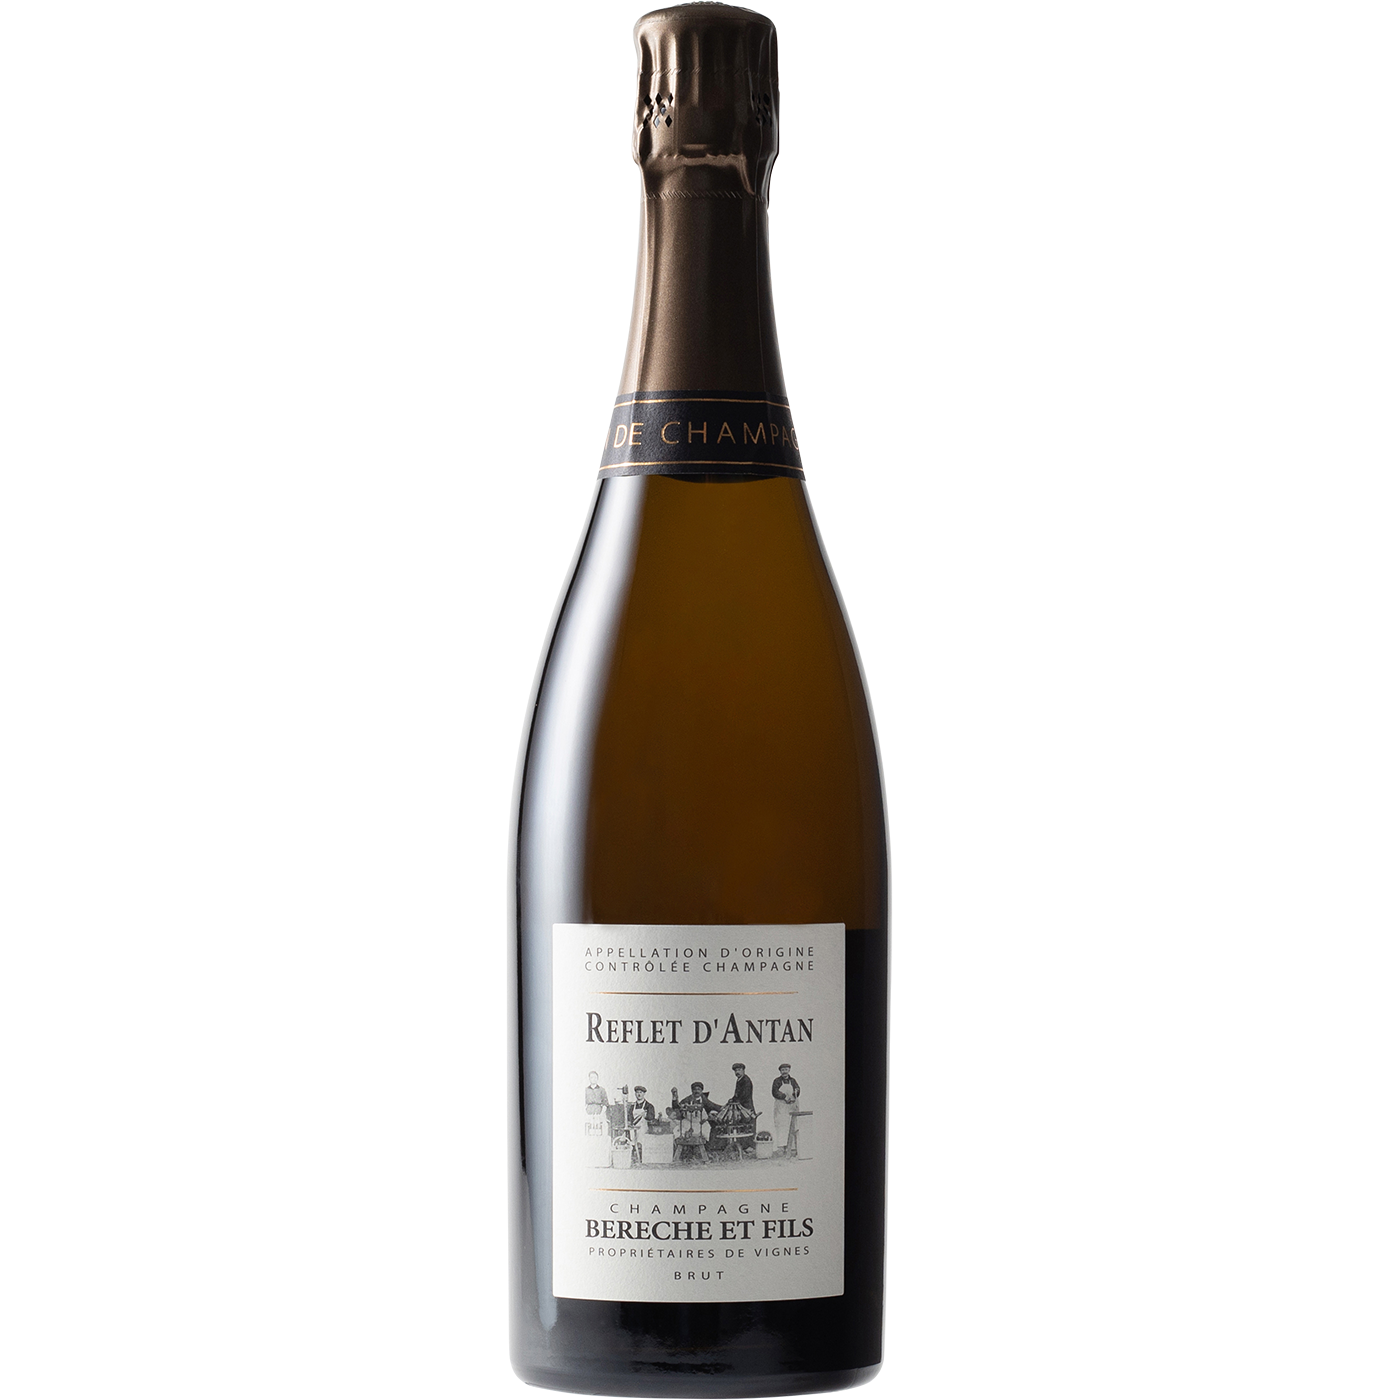 Bereche Reflet d’Antan Brut Champagne 2015